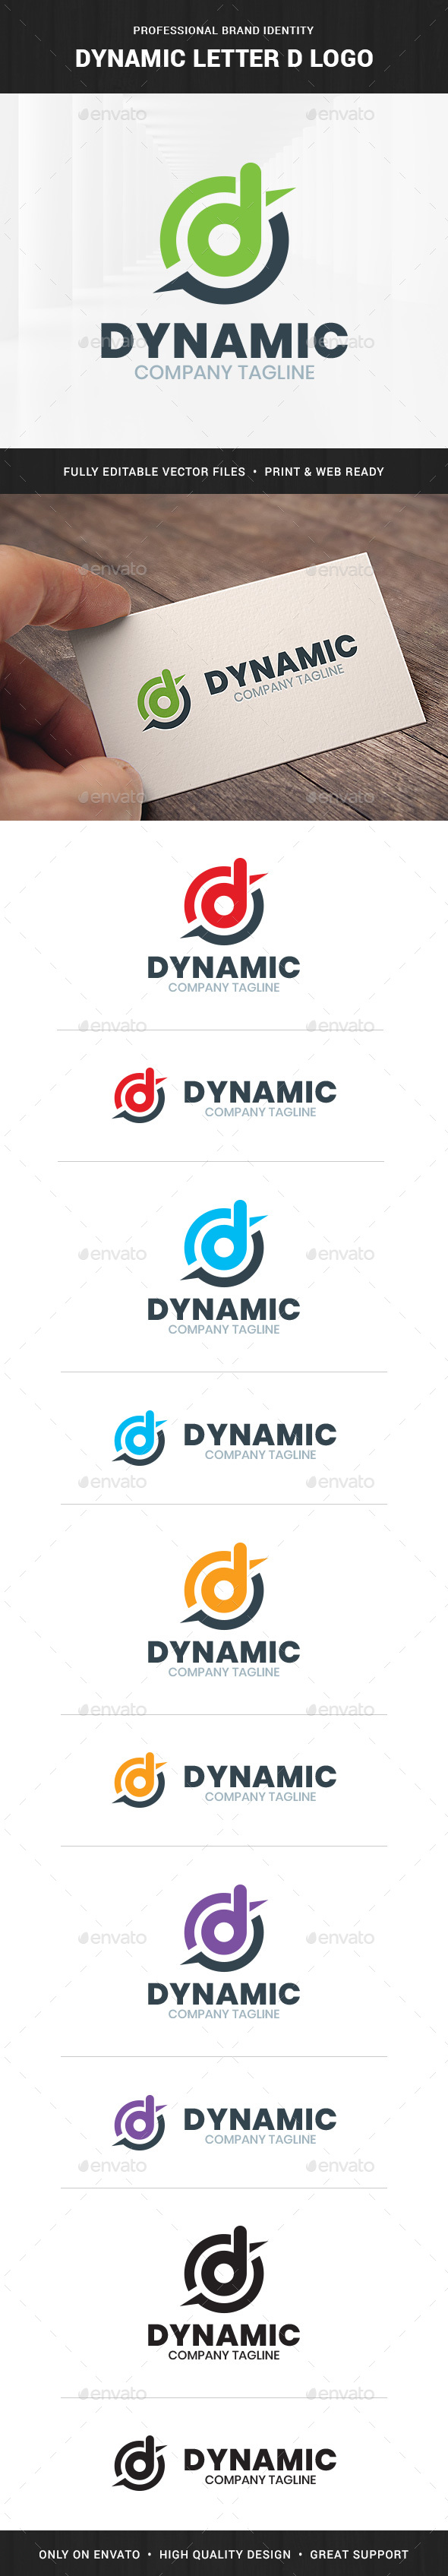 Dynamic - Letter D Logo Template